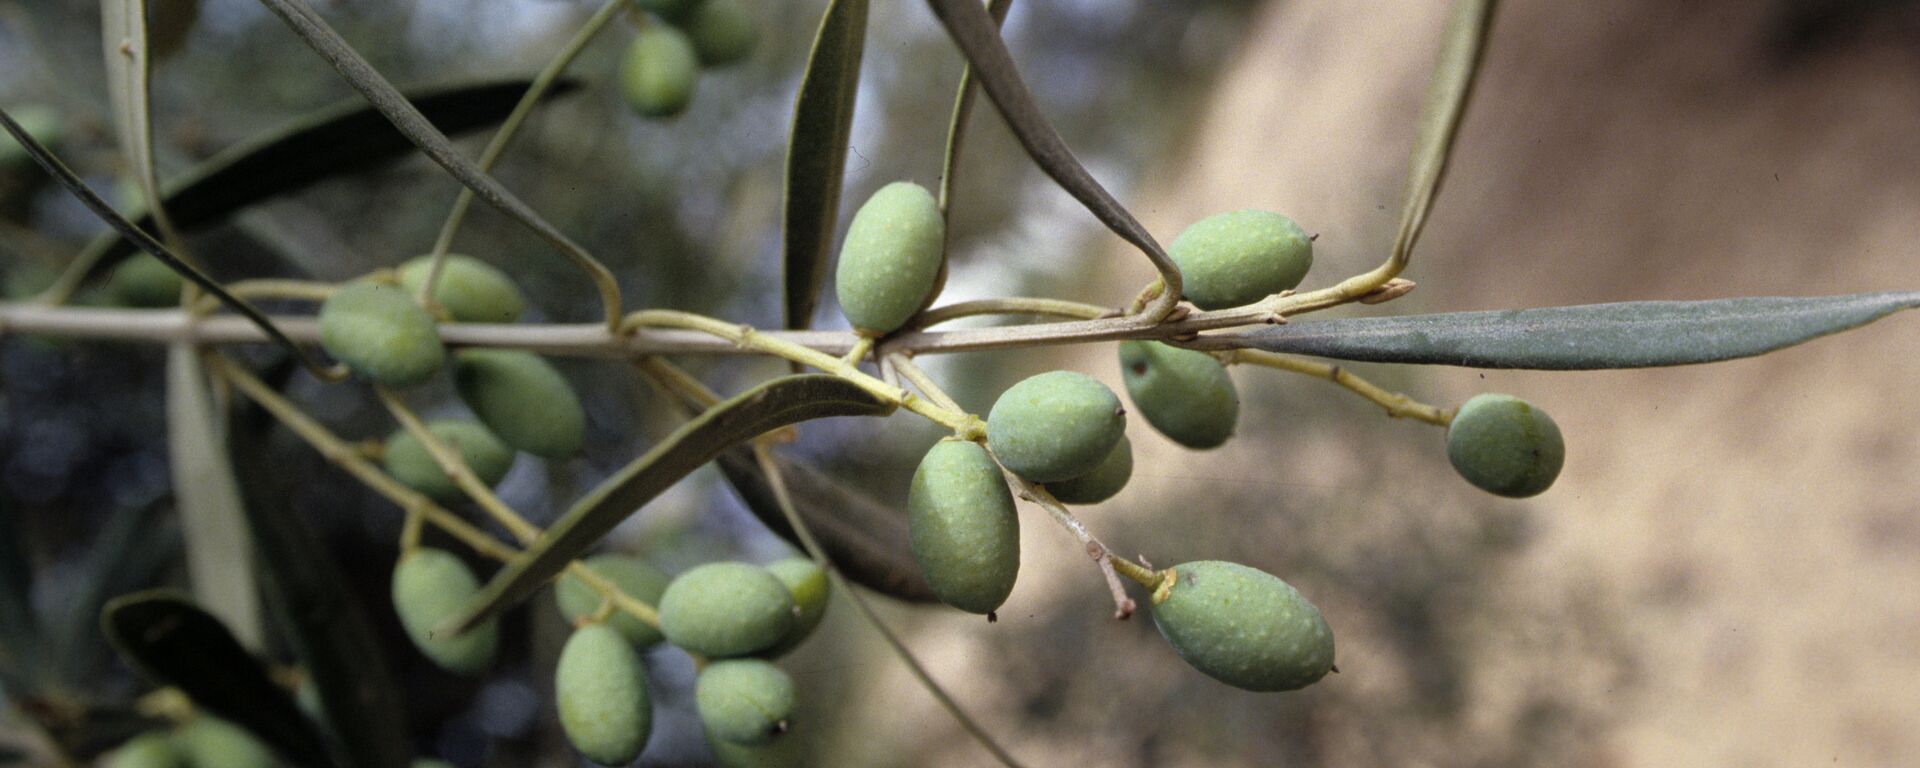 Оливки - плоды оливкового дерева - Sputnik Узбекистан, 1920, 02.06.2021